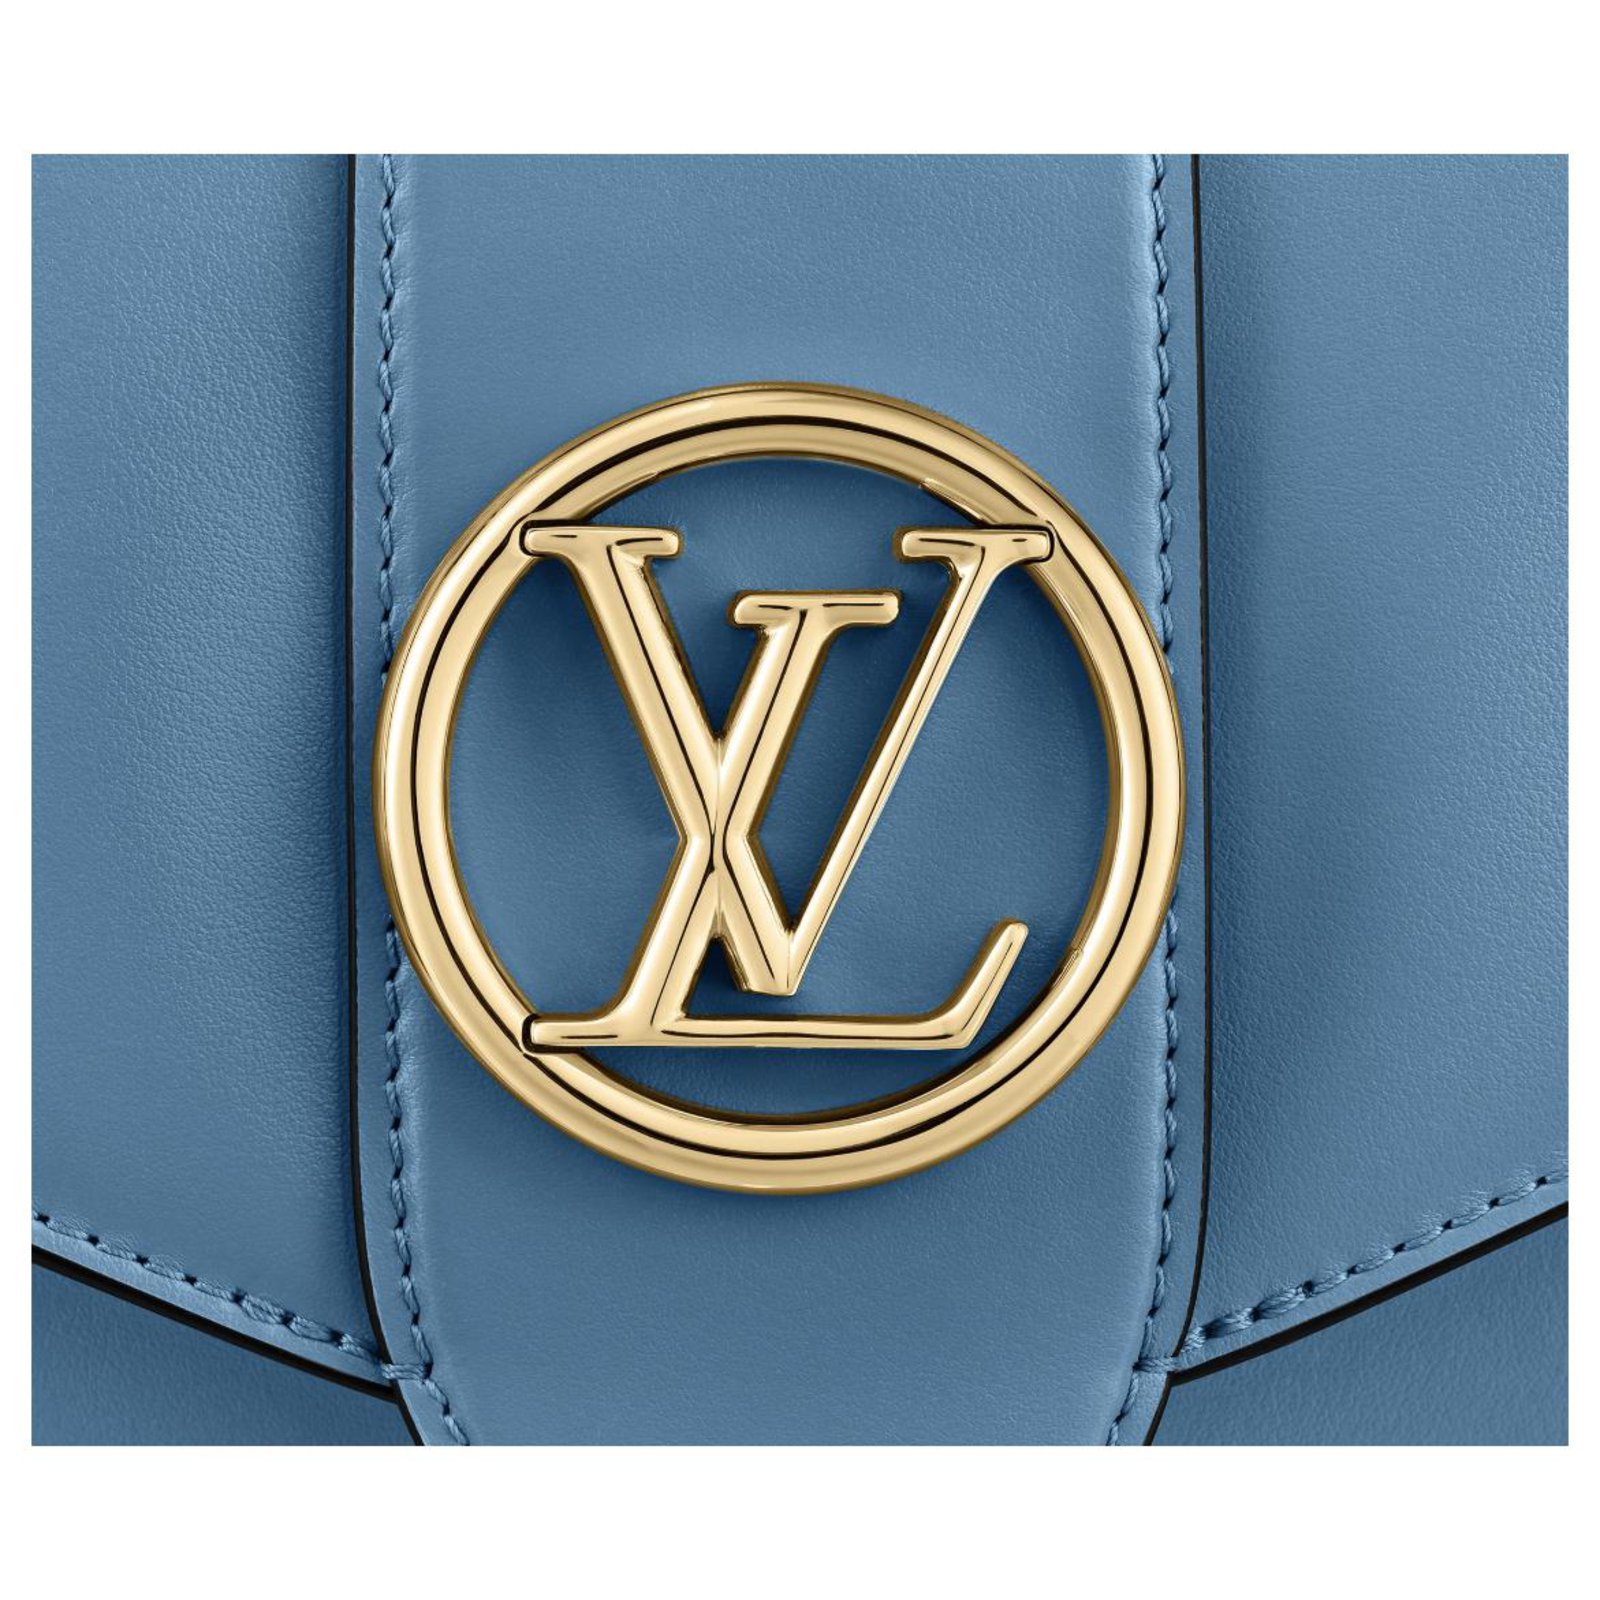 LV Pont 9 de Louis Vuitton, el bolso que lucirán las celebrities este verano